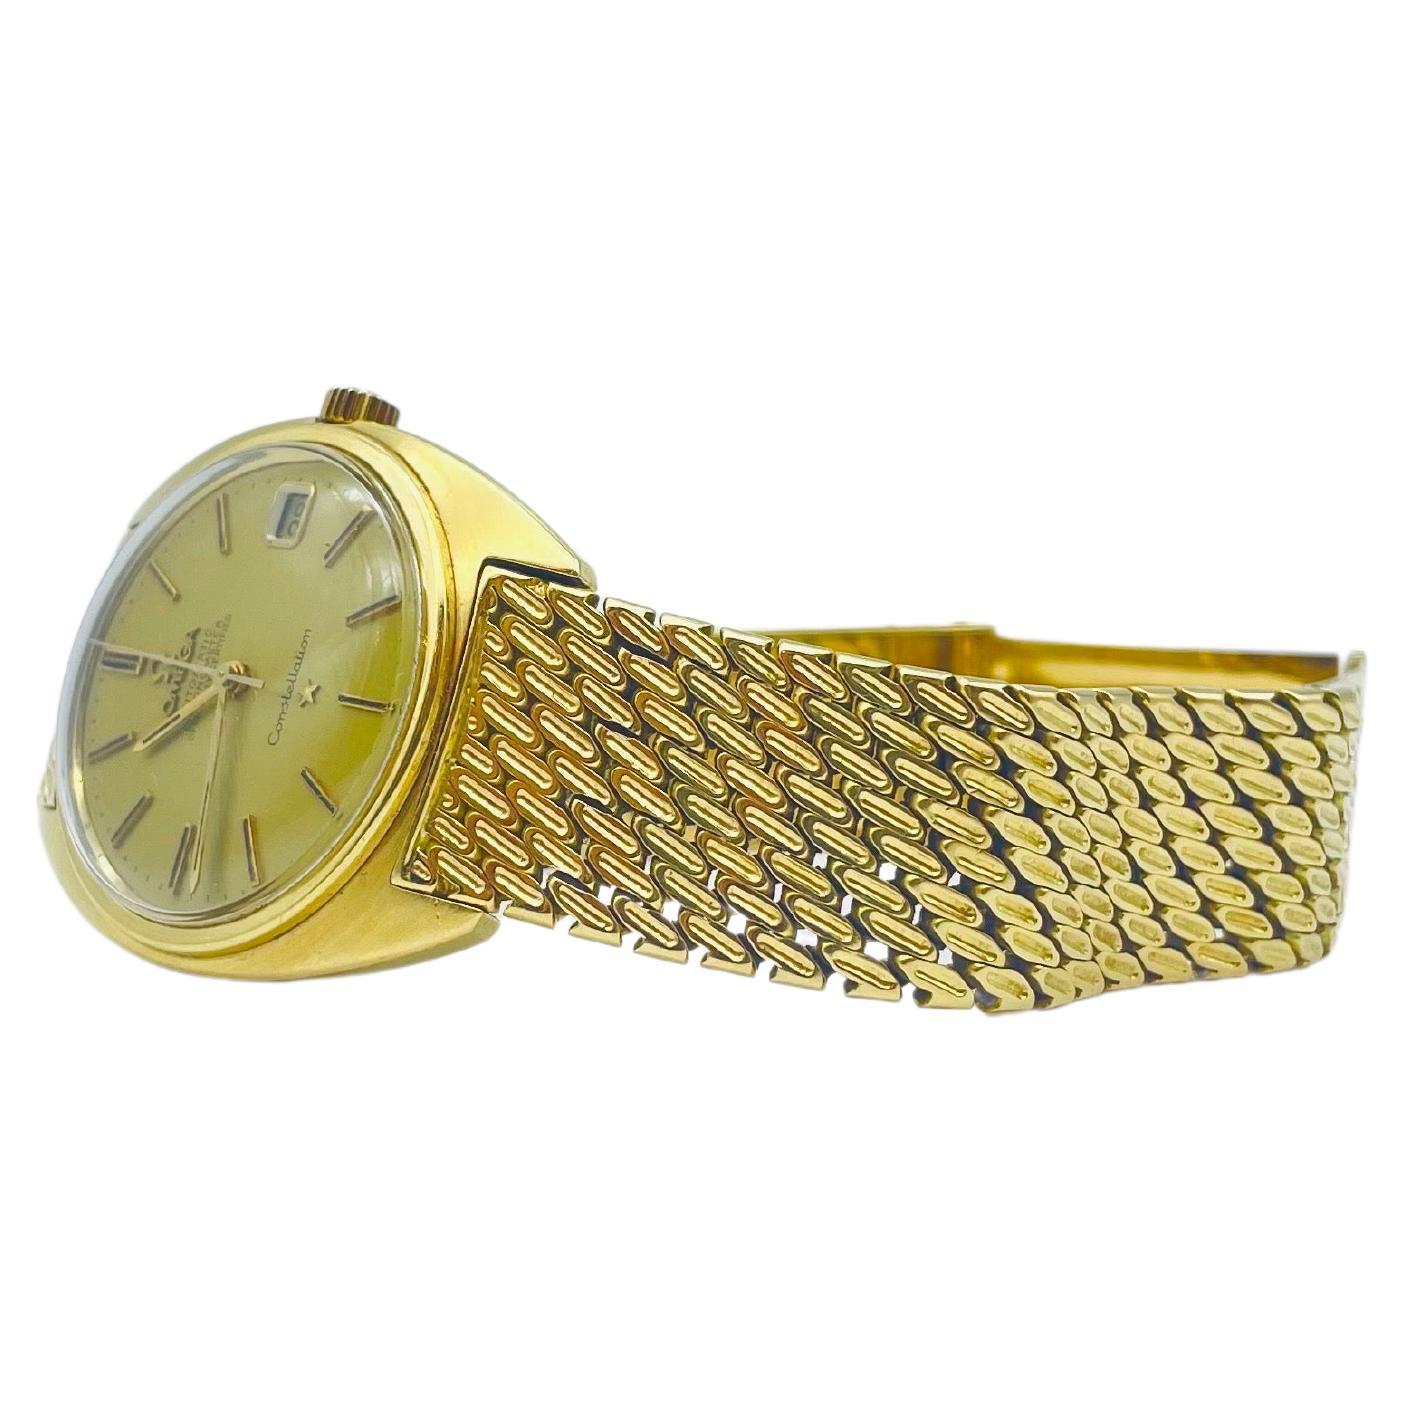 Das 35-mm-Gehäuse dieser Uhr aus Gelbgold wird von einer Lünette aus Gelbgold umrahmt, die ihren opulenten Charme noch unterstreicht. Das Zifferblatt mit goldenen Ziffern verleiht der Uhr einen Hauch von klassischer Raffinesse, und das